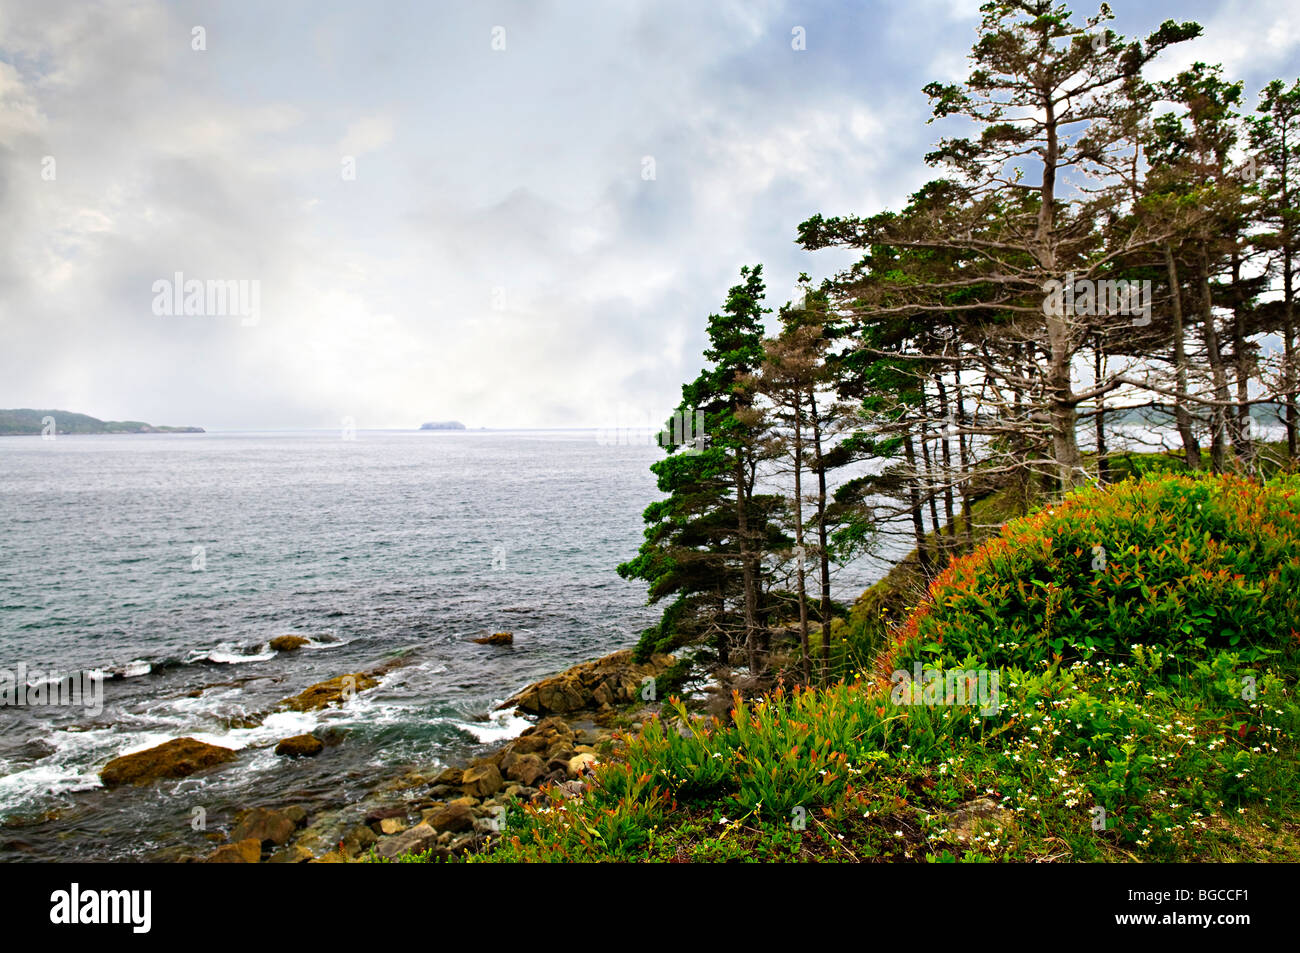 Vue panoramique de la côte rocheuse la côte atlantique avec des arbres à Terre-Neuve, Canada Banque D'Images